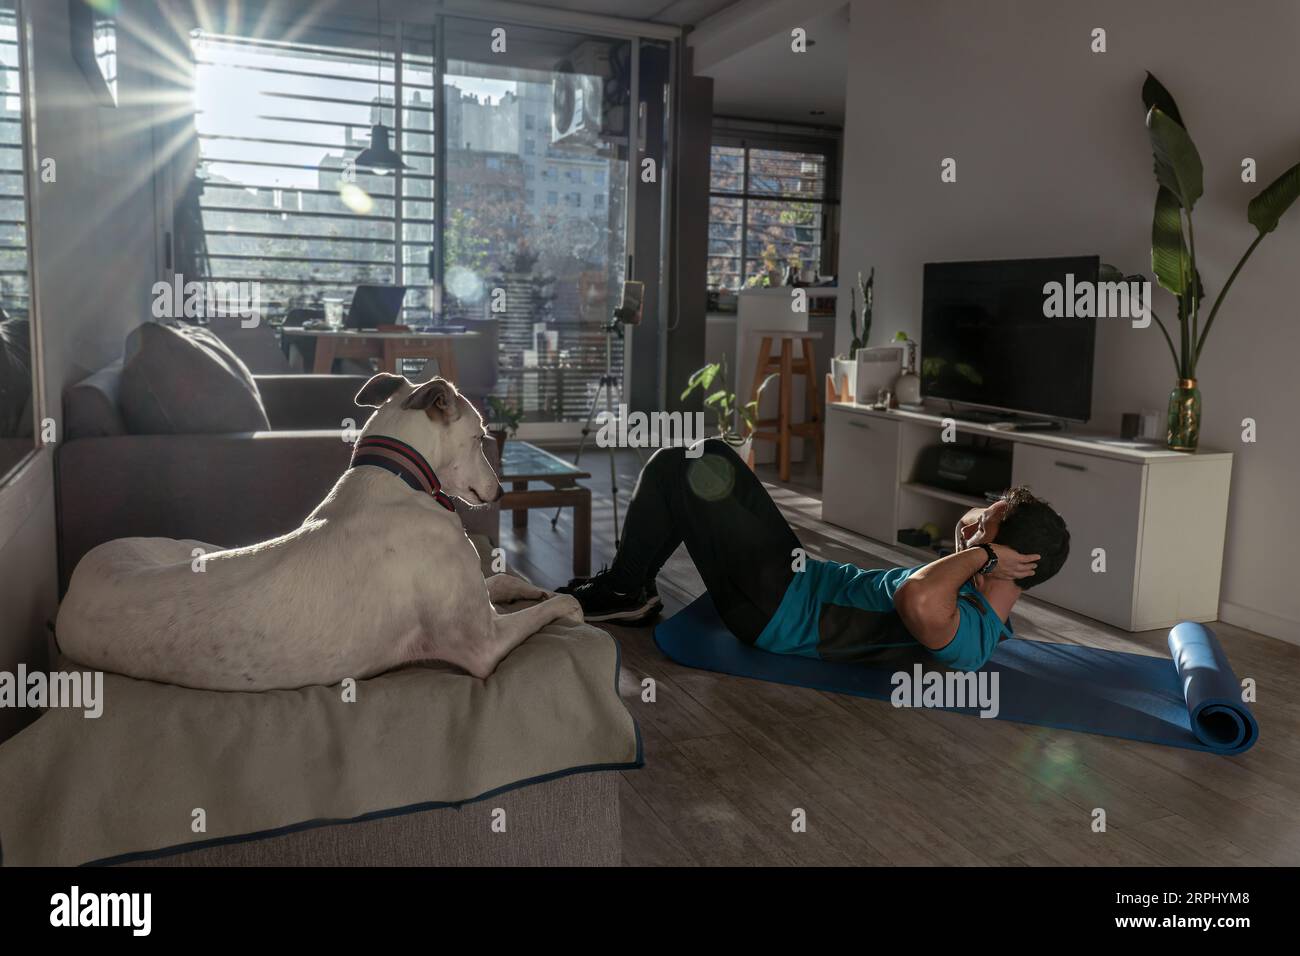 Homme en forme de formation à la maison avec son chien. Environnement éclairé par des rayons du soleil. Banque D'Images